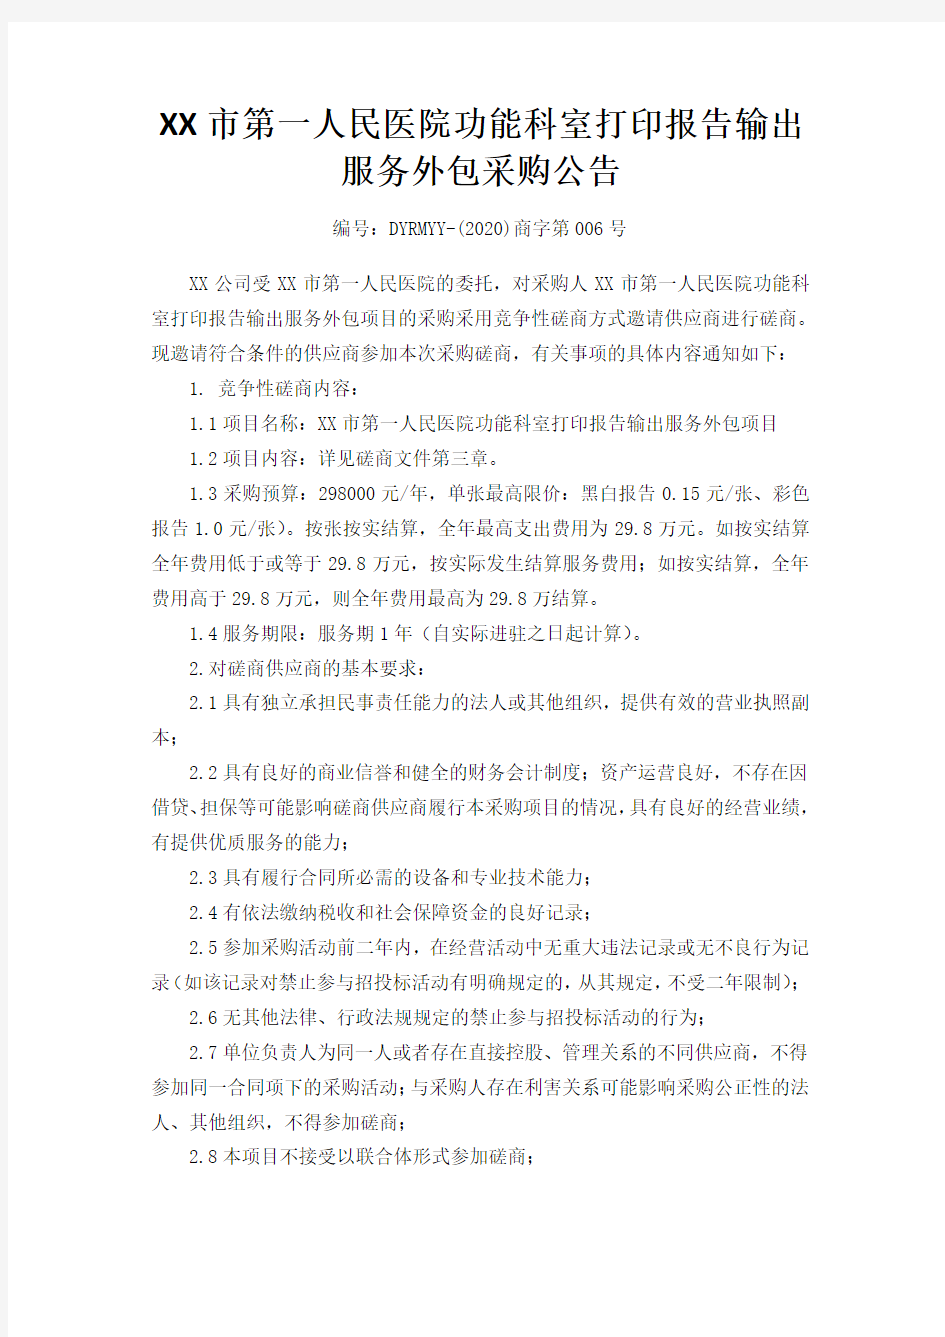 镇江市第一人民医院功能科室打印报告输出服务外包采购公告【模板】